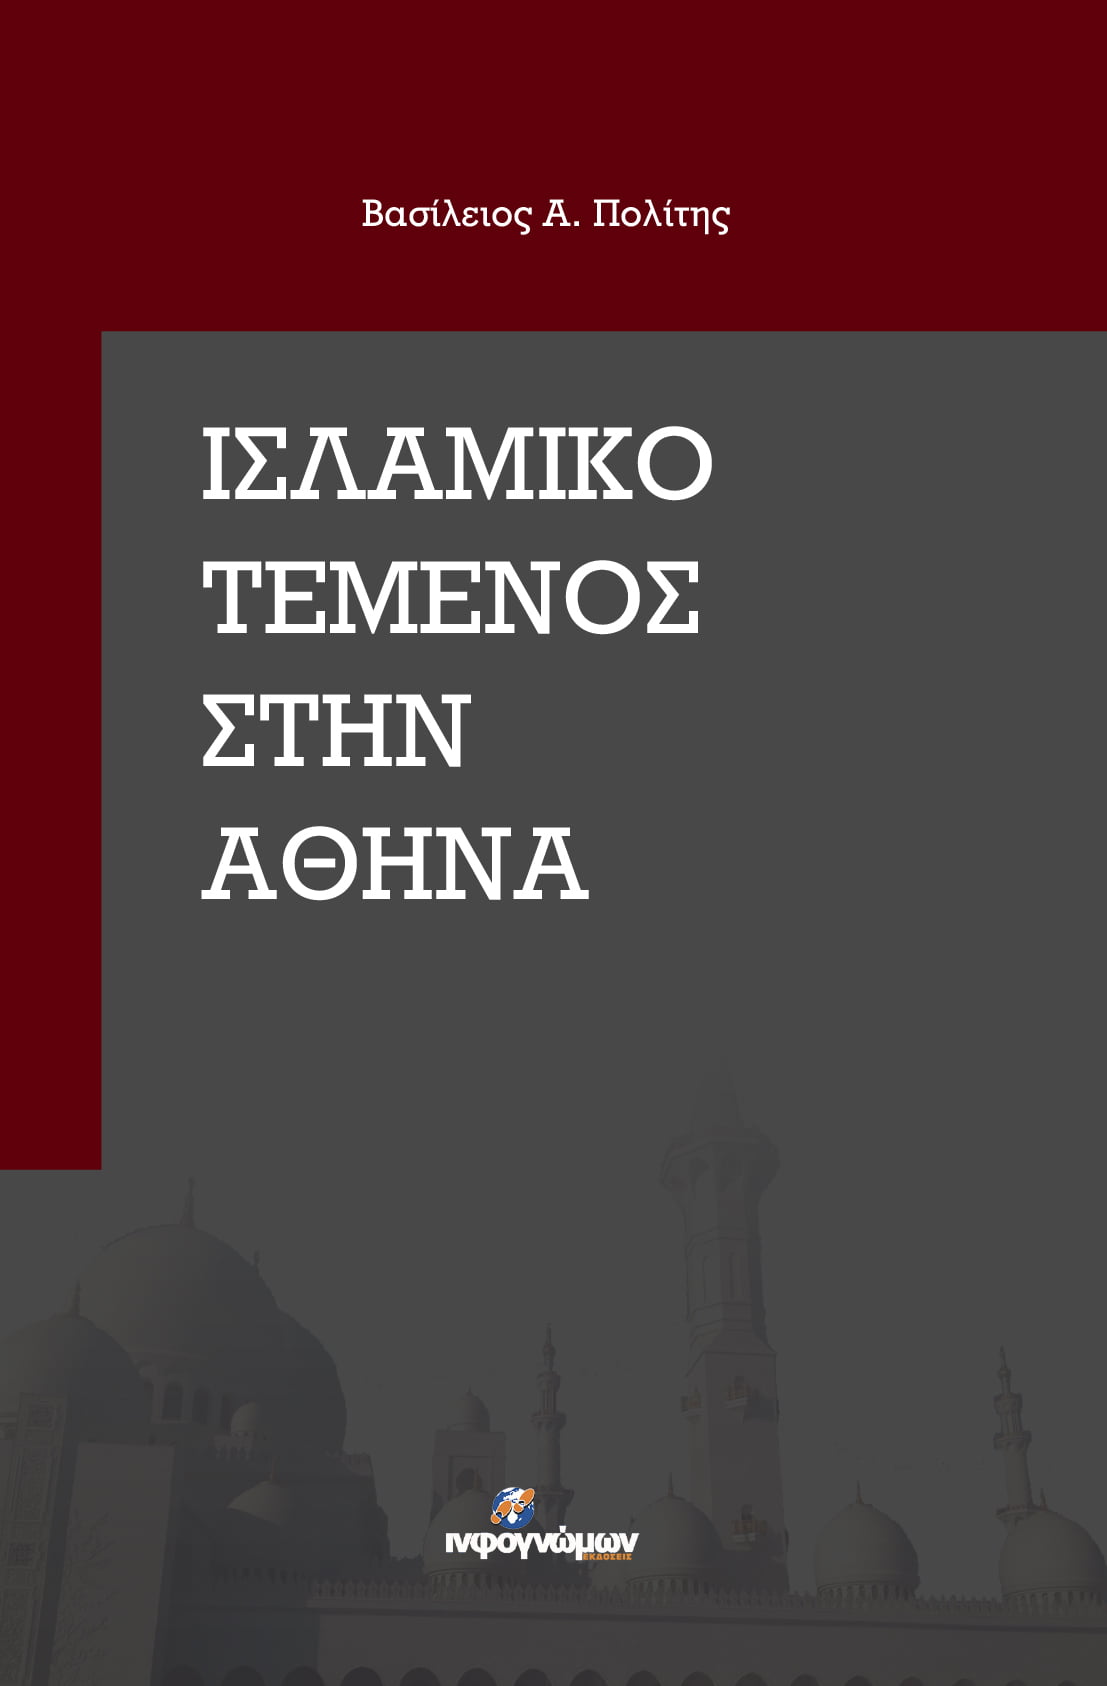 Νέα έκδοση: “Ισλαμικό τέμενος στην Αθήνα”